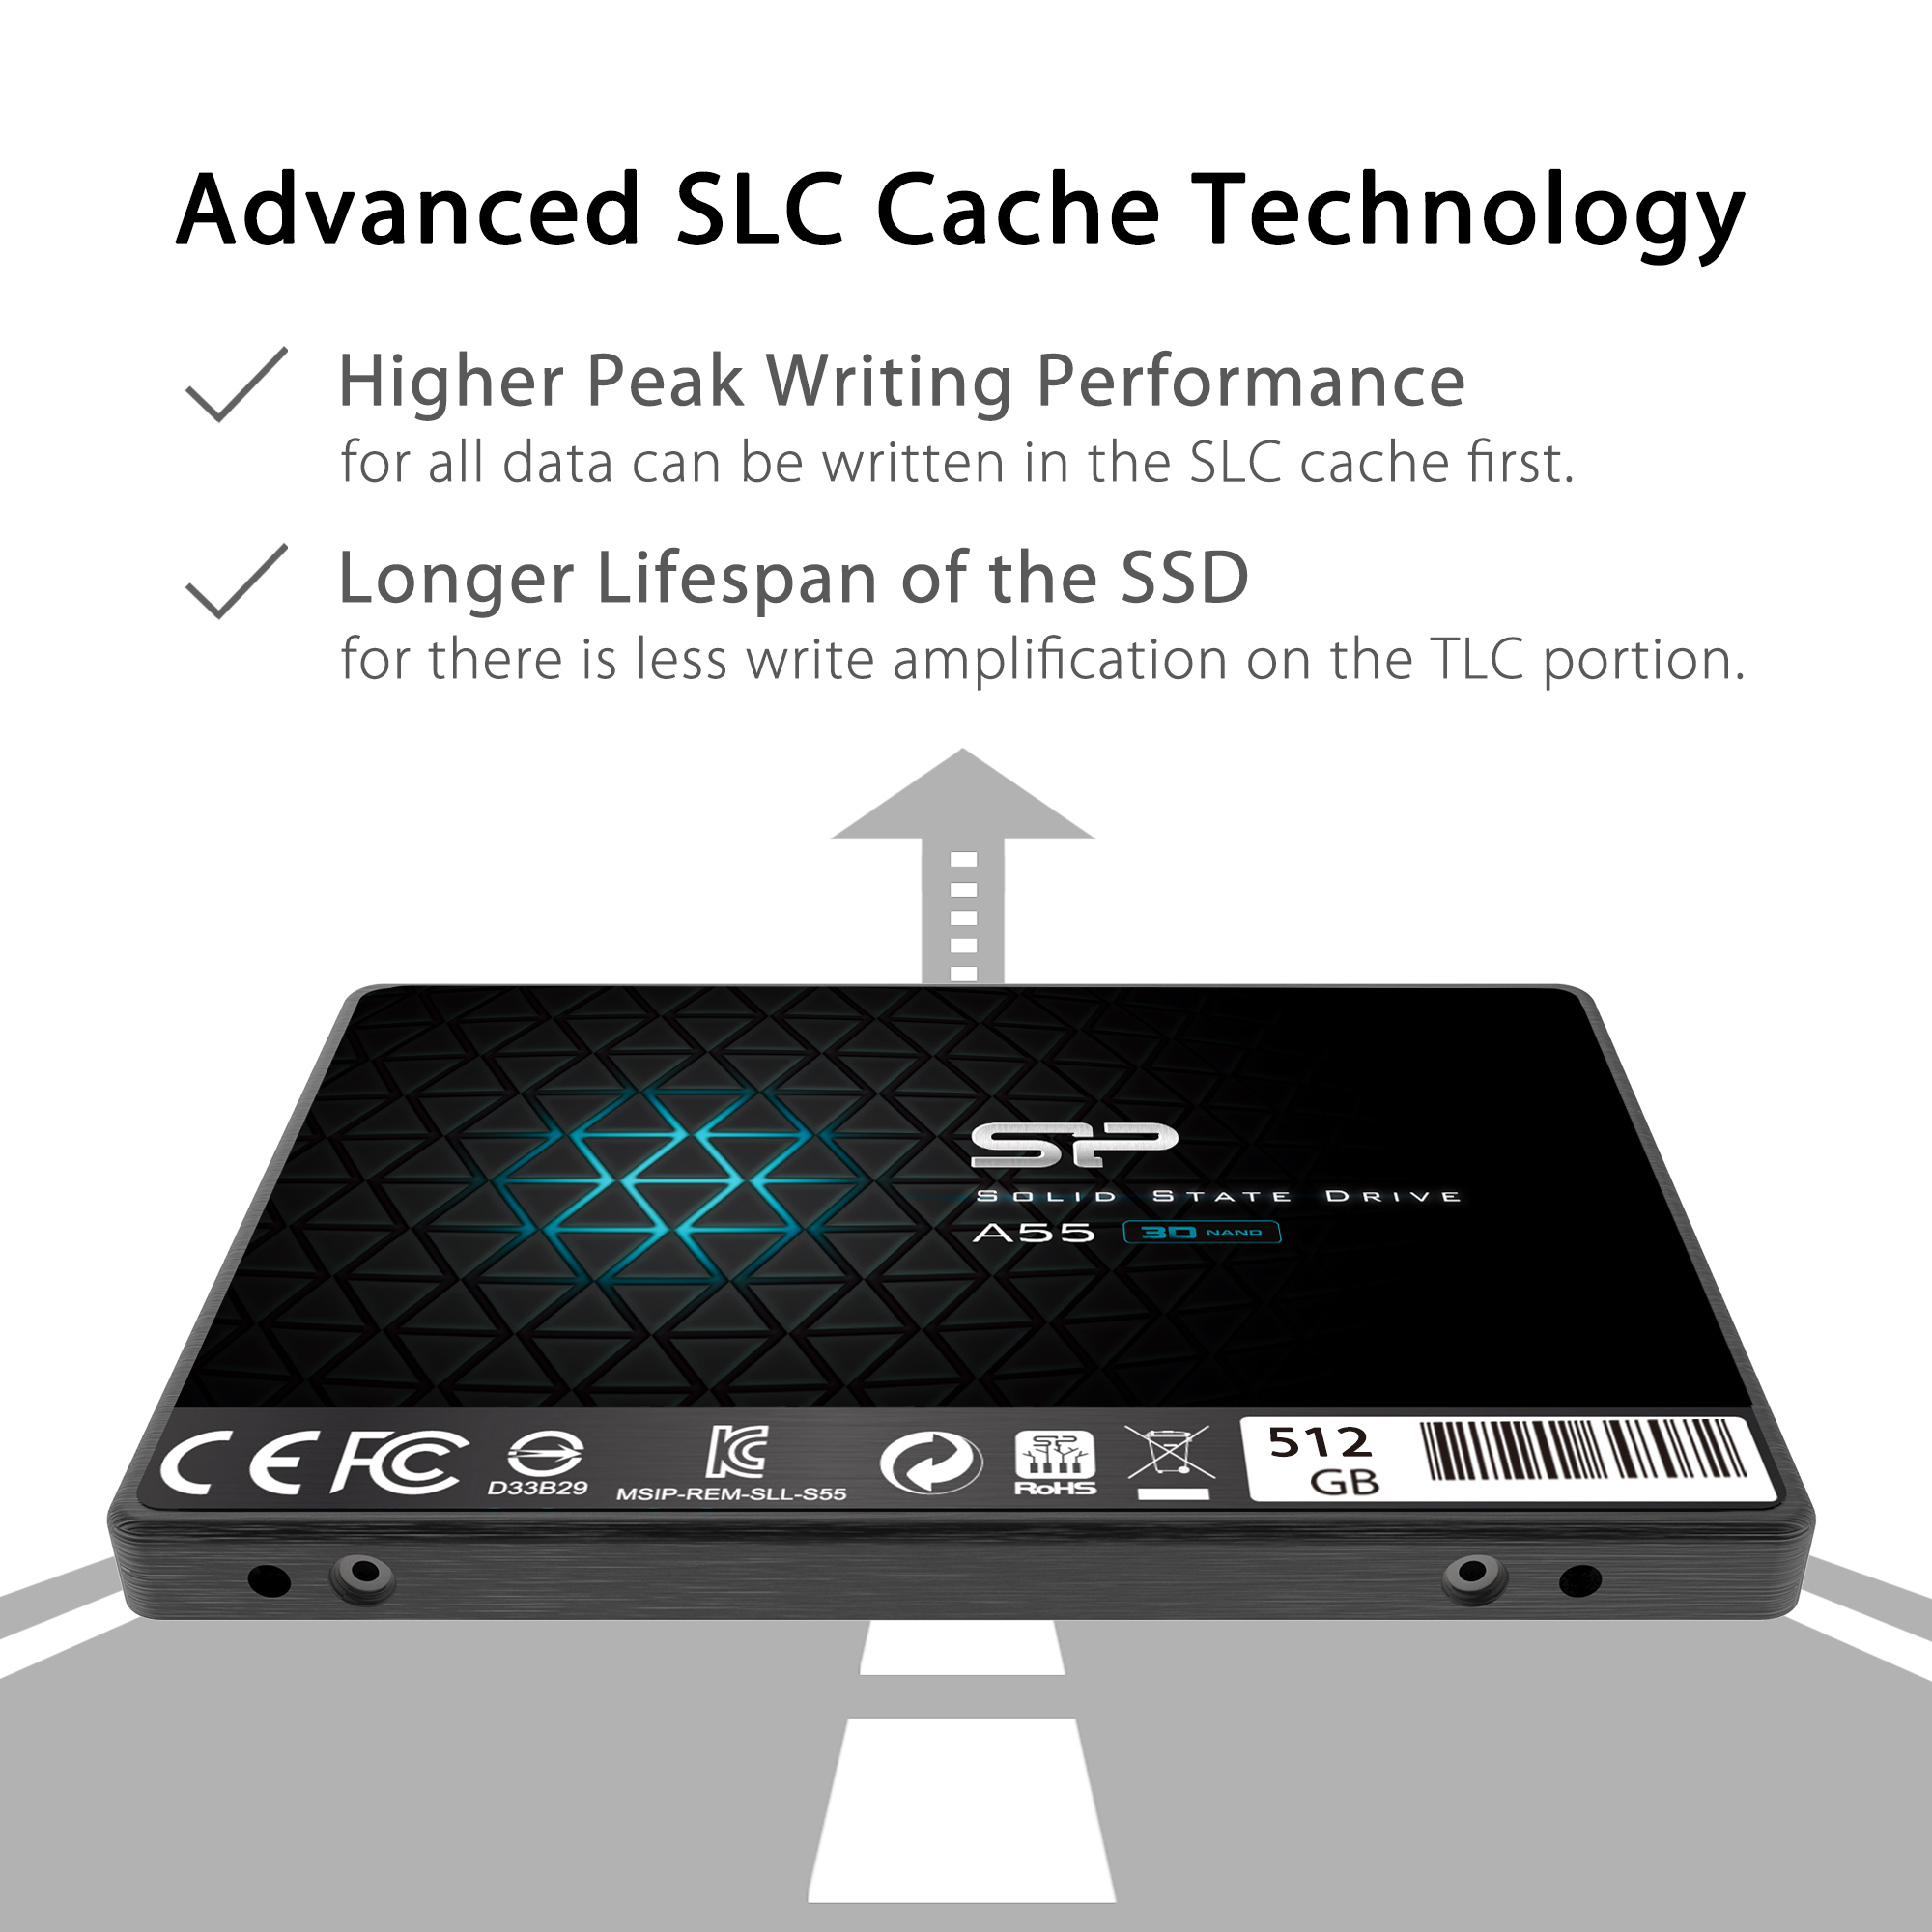 Ổ cứng Silicon Power SSD SATA III A55 2.5" -Hàng chính hãng